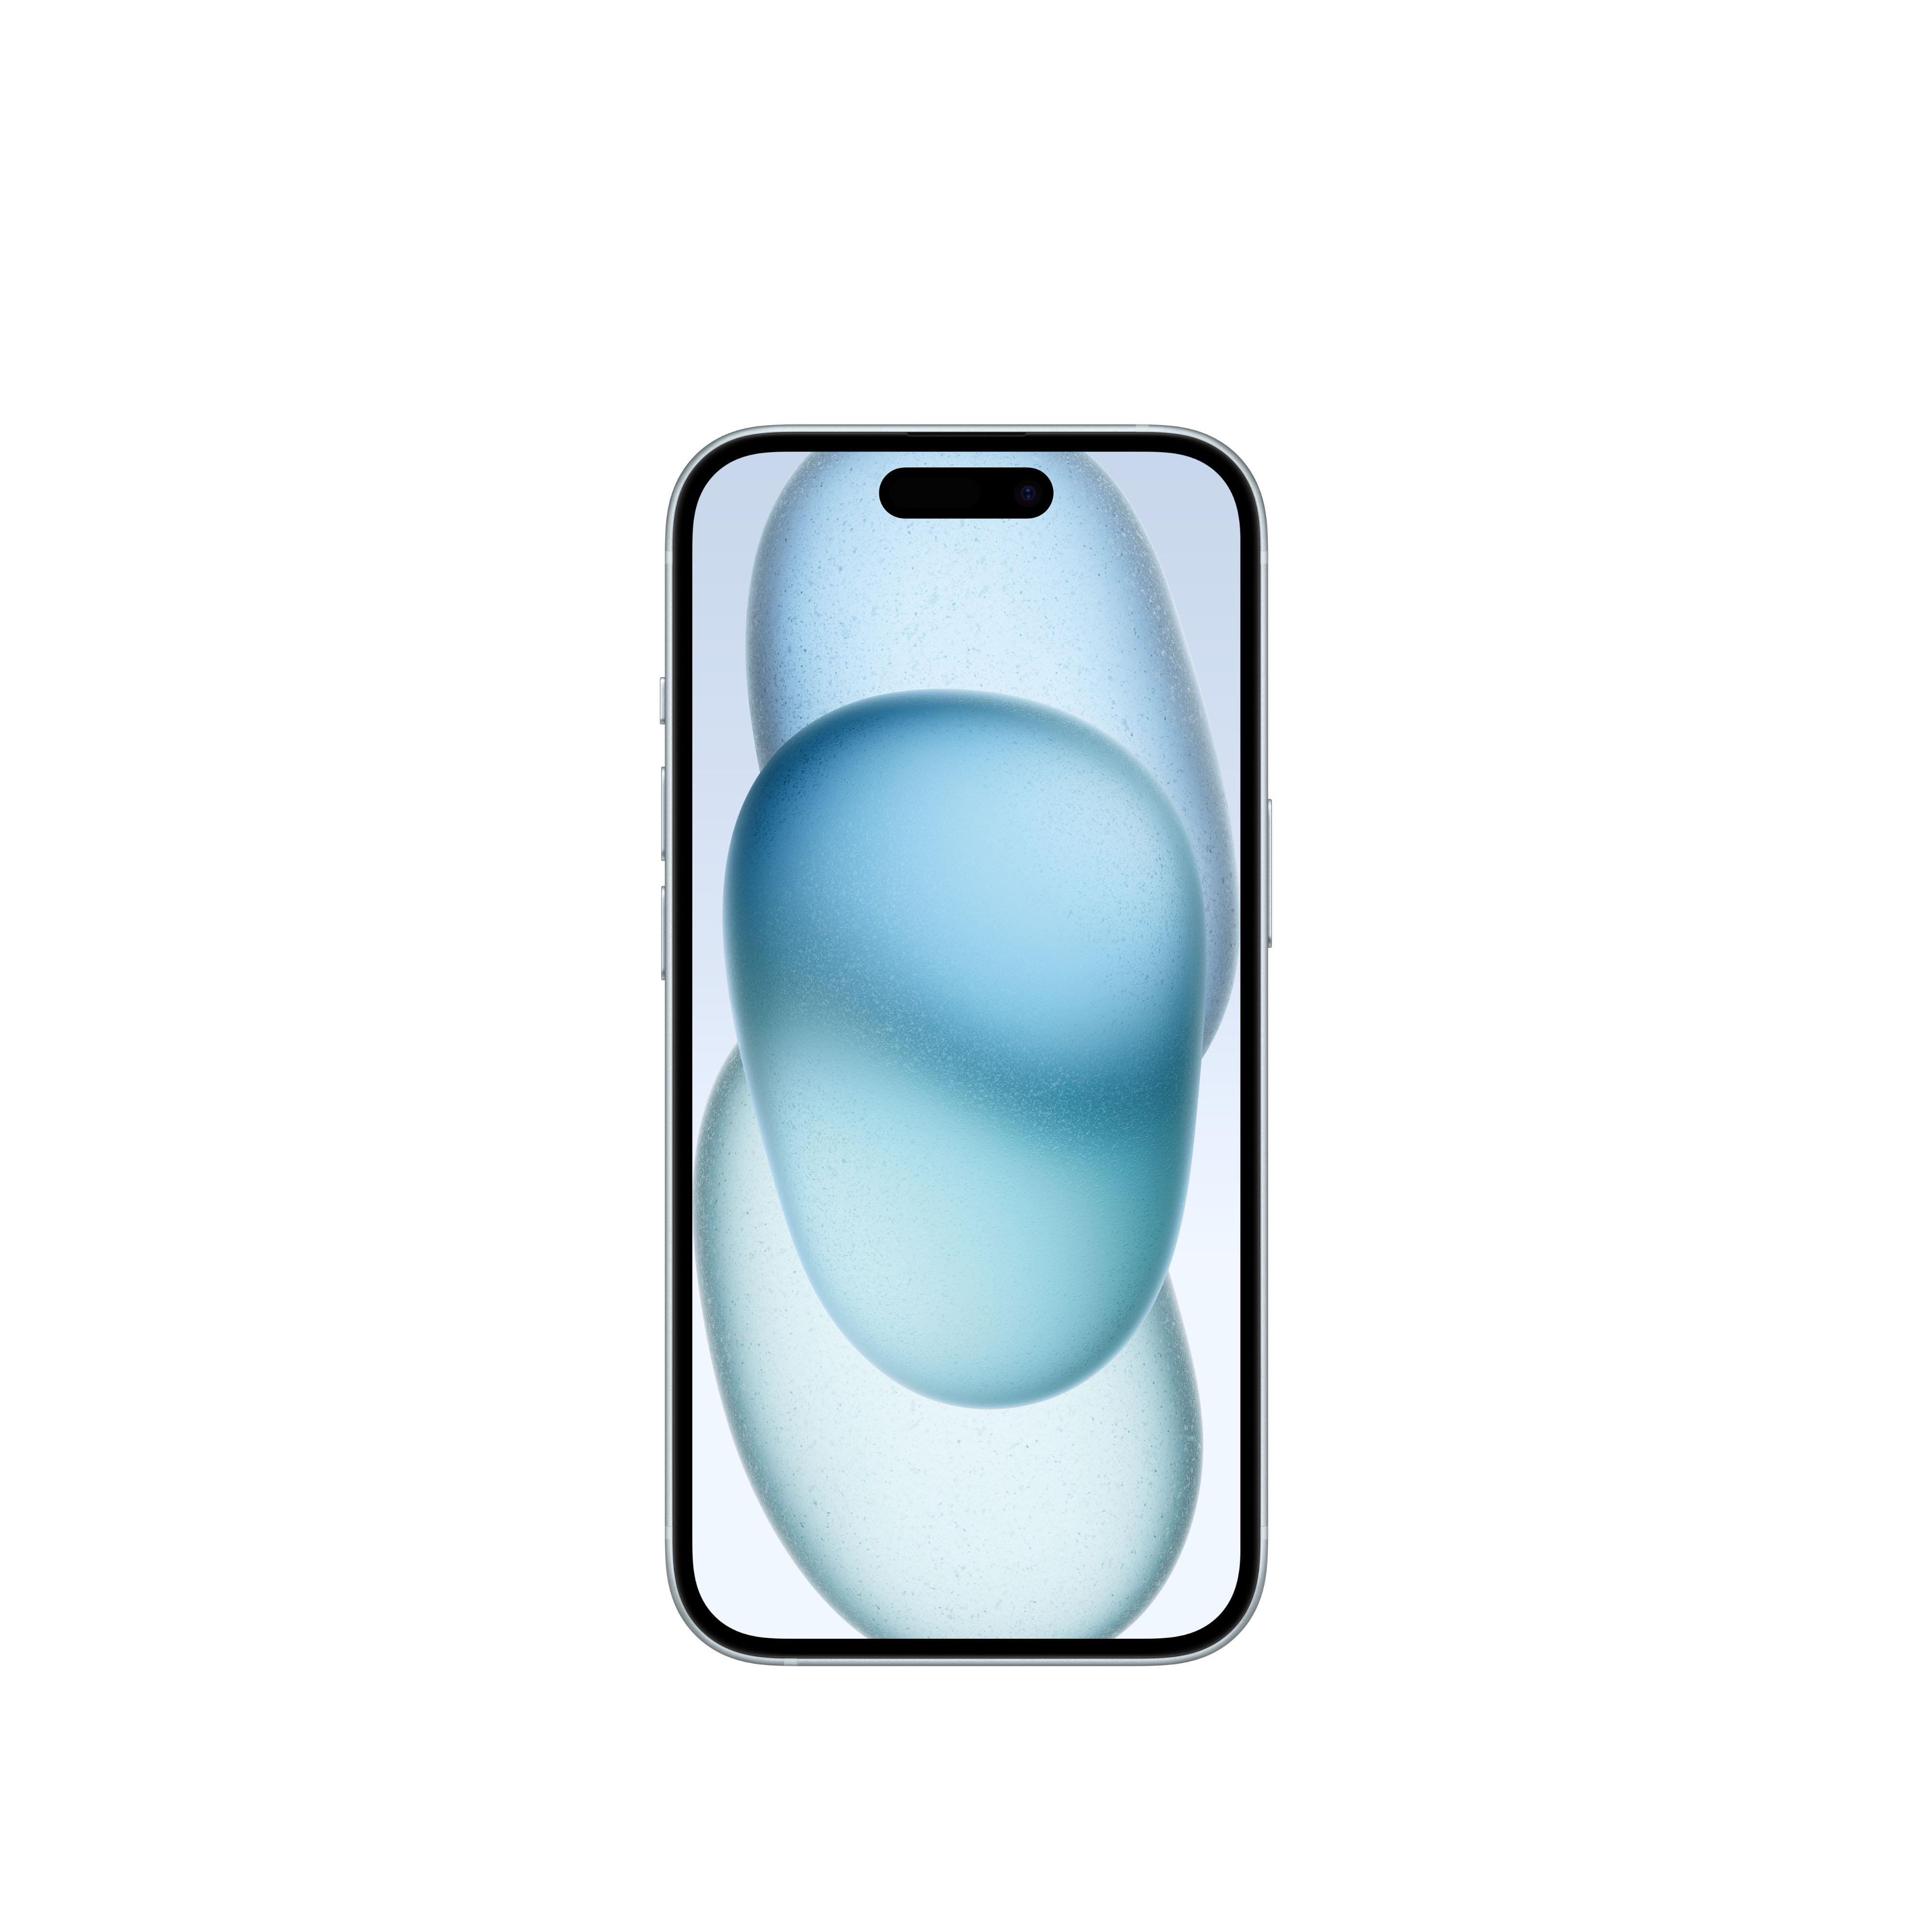 15 256 Blau SIM iPhone GB APPLE 5G Dual